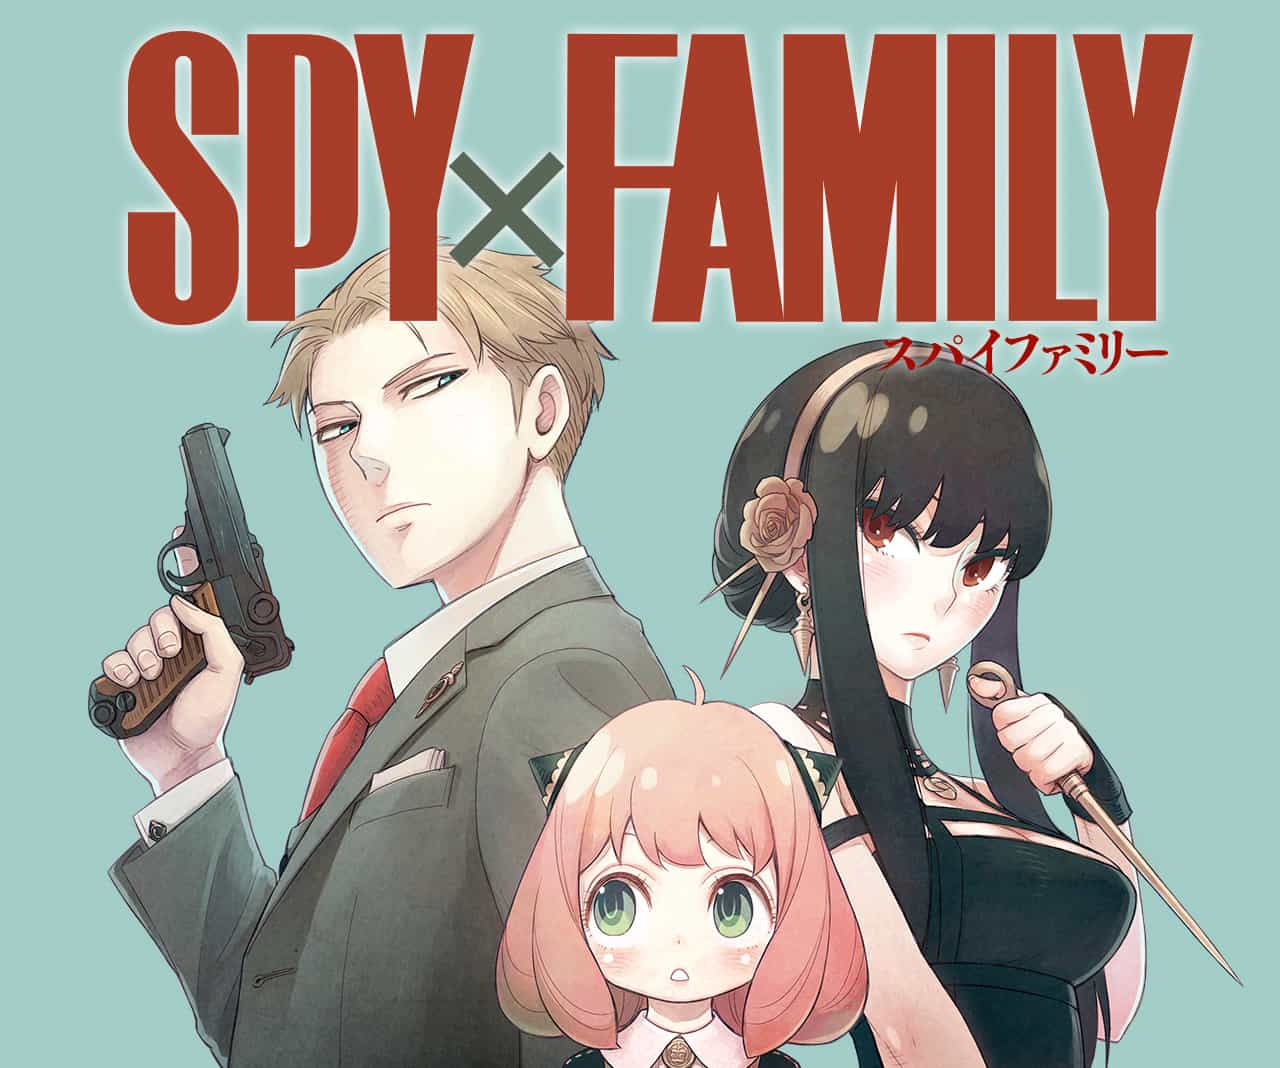 Spy x Family Episódio 7: Data de lançamento, visualização, assistir online